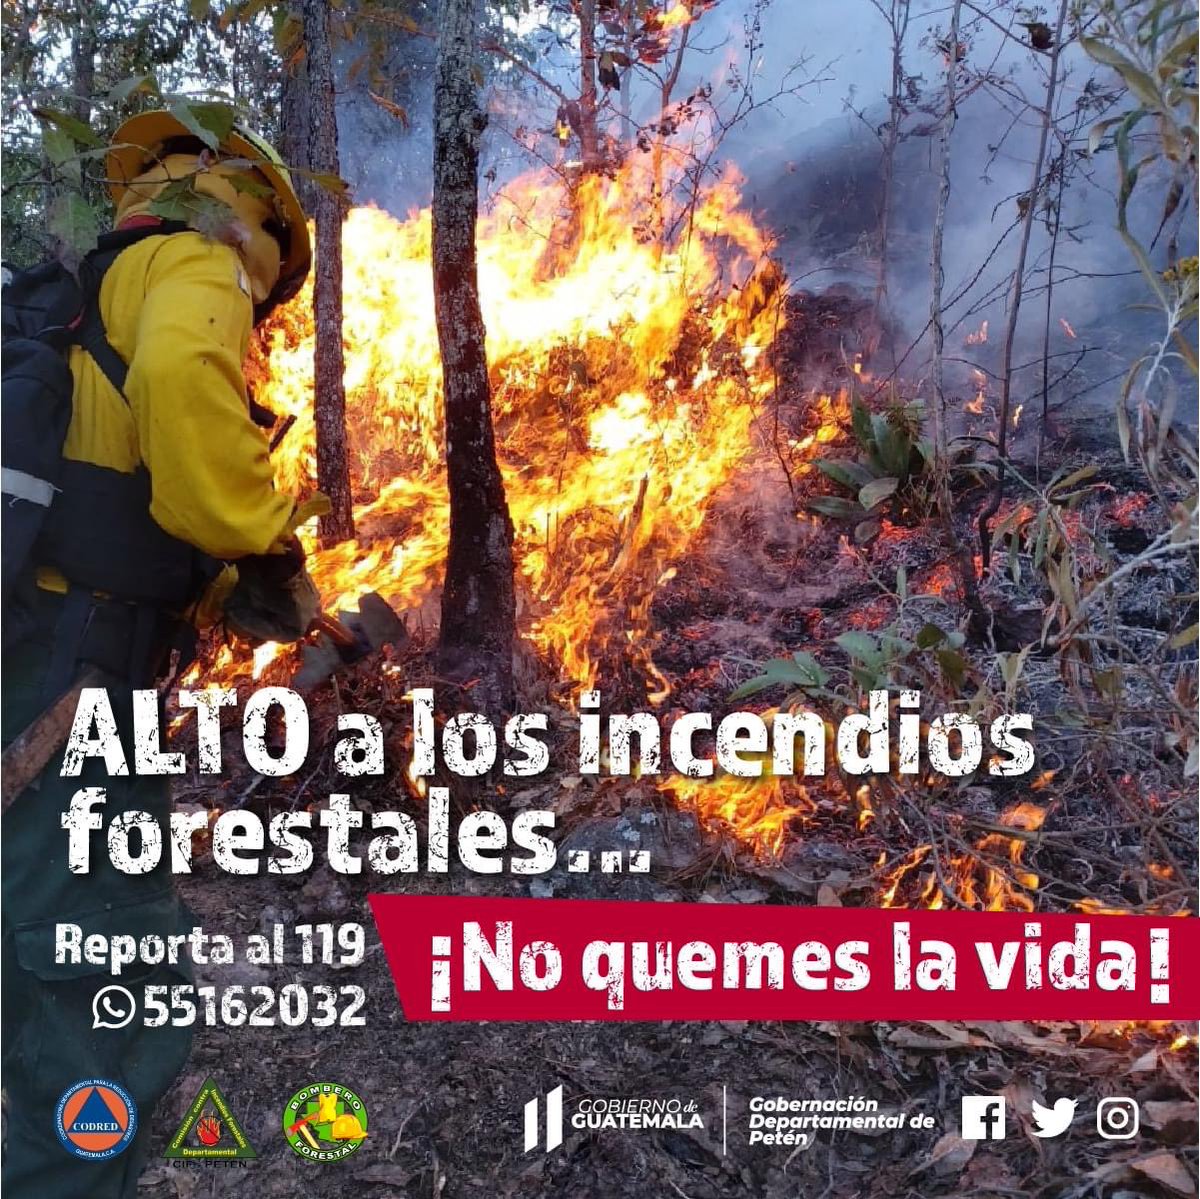 Si ve un incendio forestal, no se exponga y de aviso a las autoridades correspondientes llamando al 119  🌳

#CIFdPetén
#NoQuemesLaVida
#PeténSinIncendiosForestales